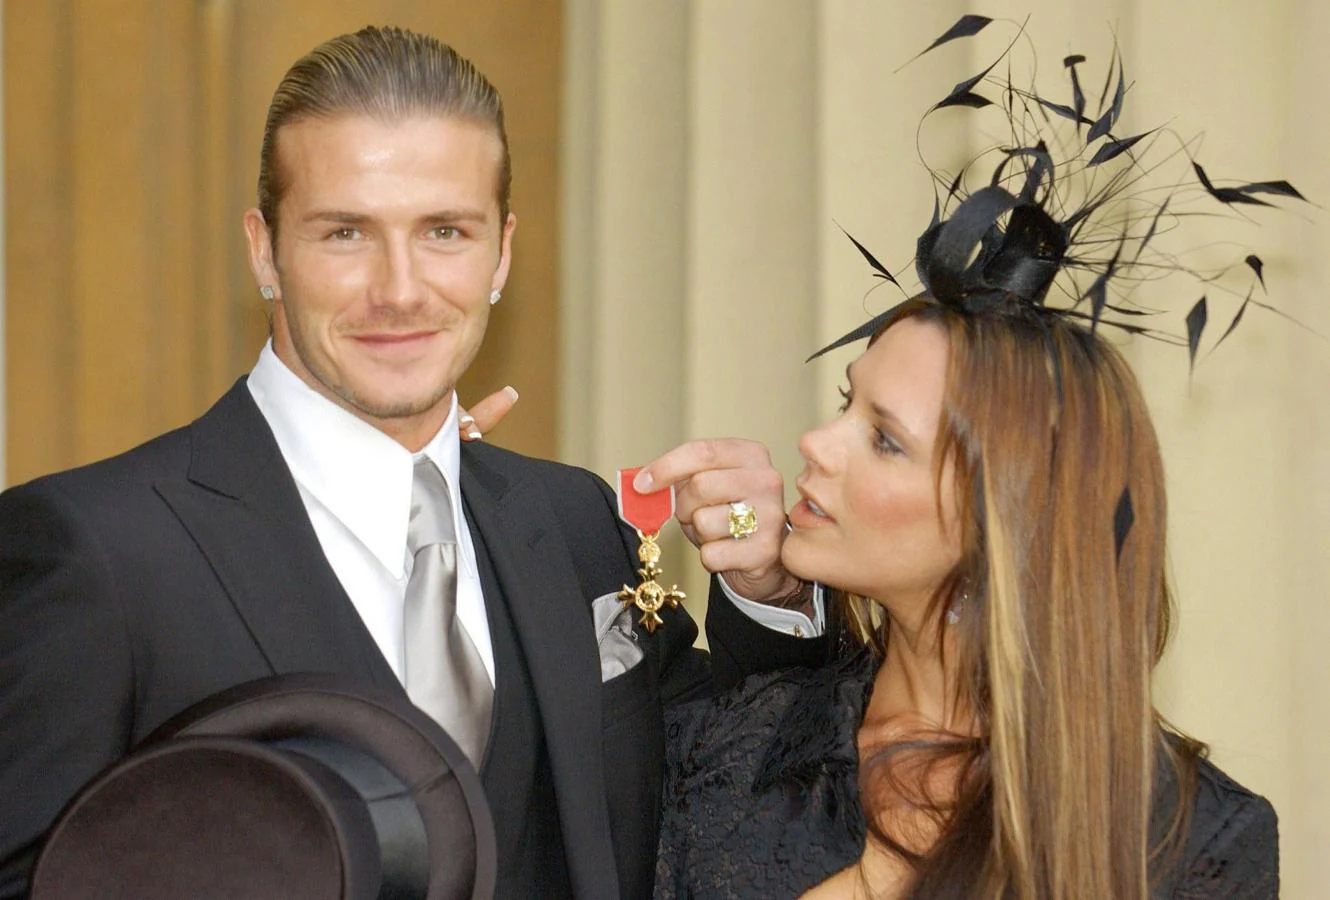 Galardonado. En 2003, el ex futbolista recibió la Orden del Imperio Británico acompañado de su mujer.